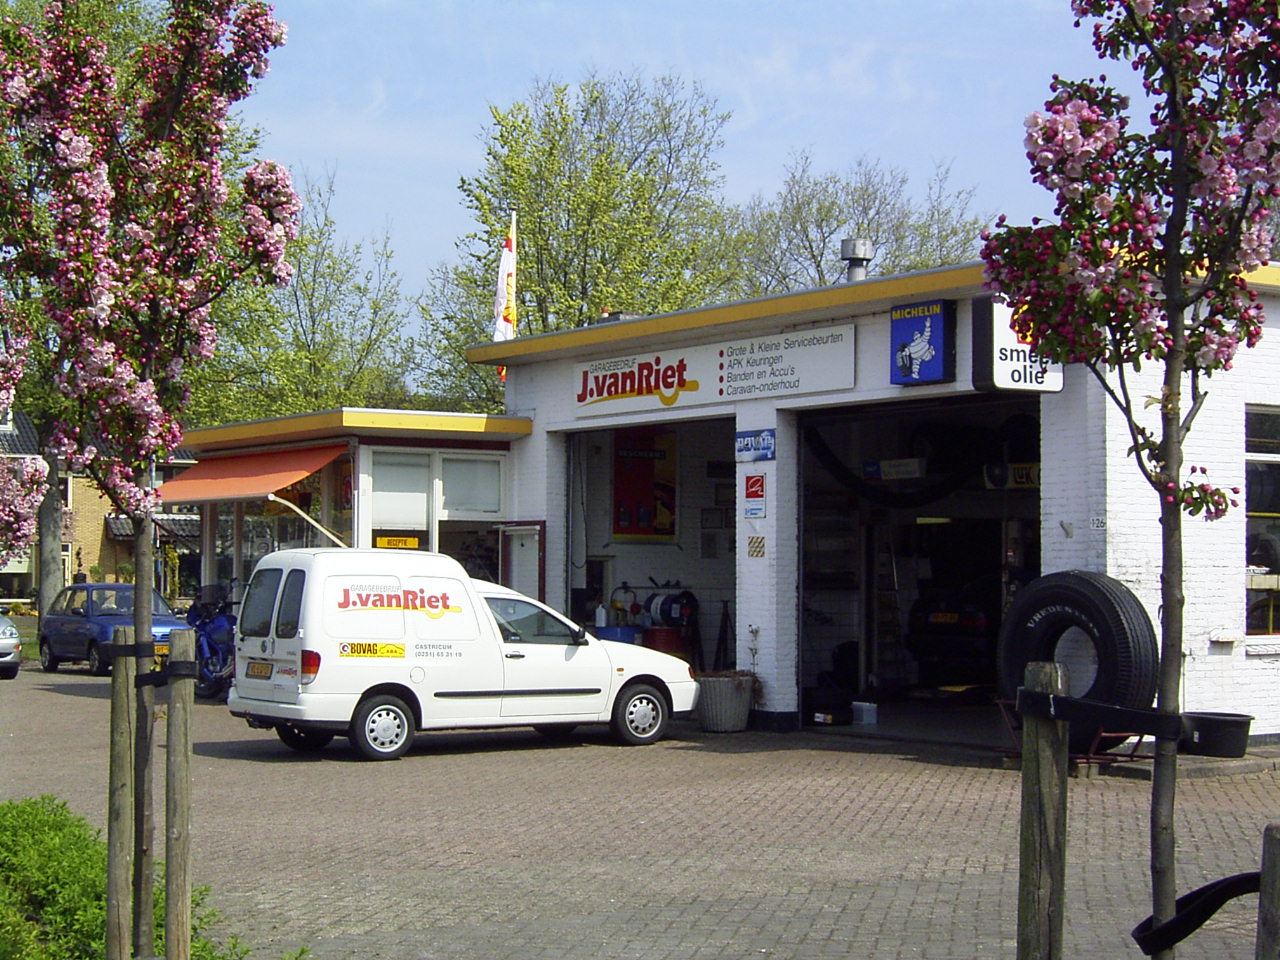 Garage 2007